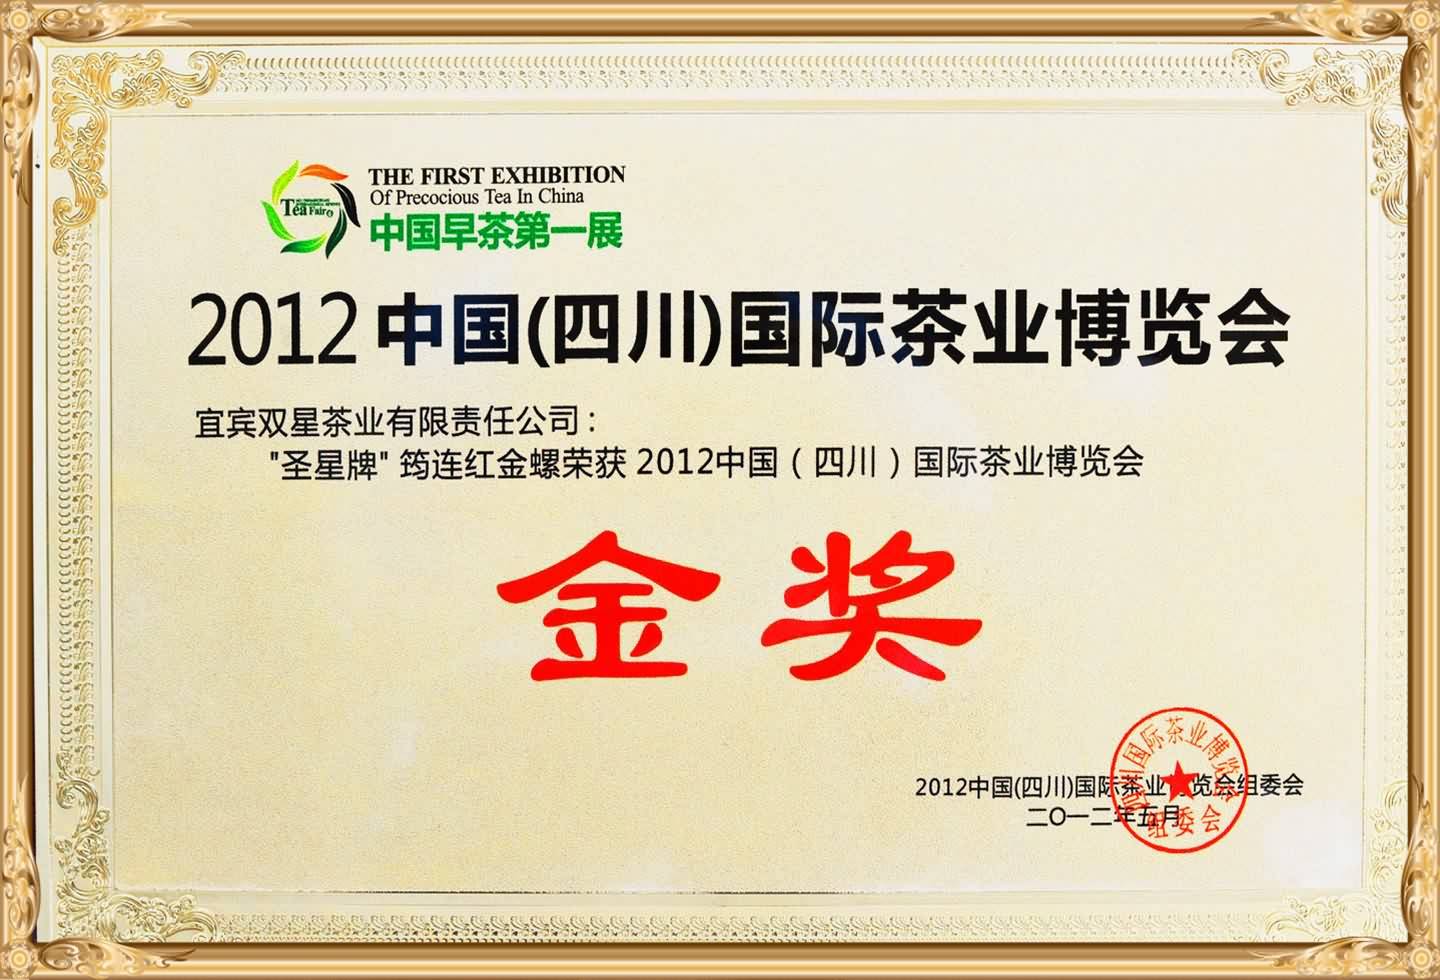 Отображение сертификата